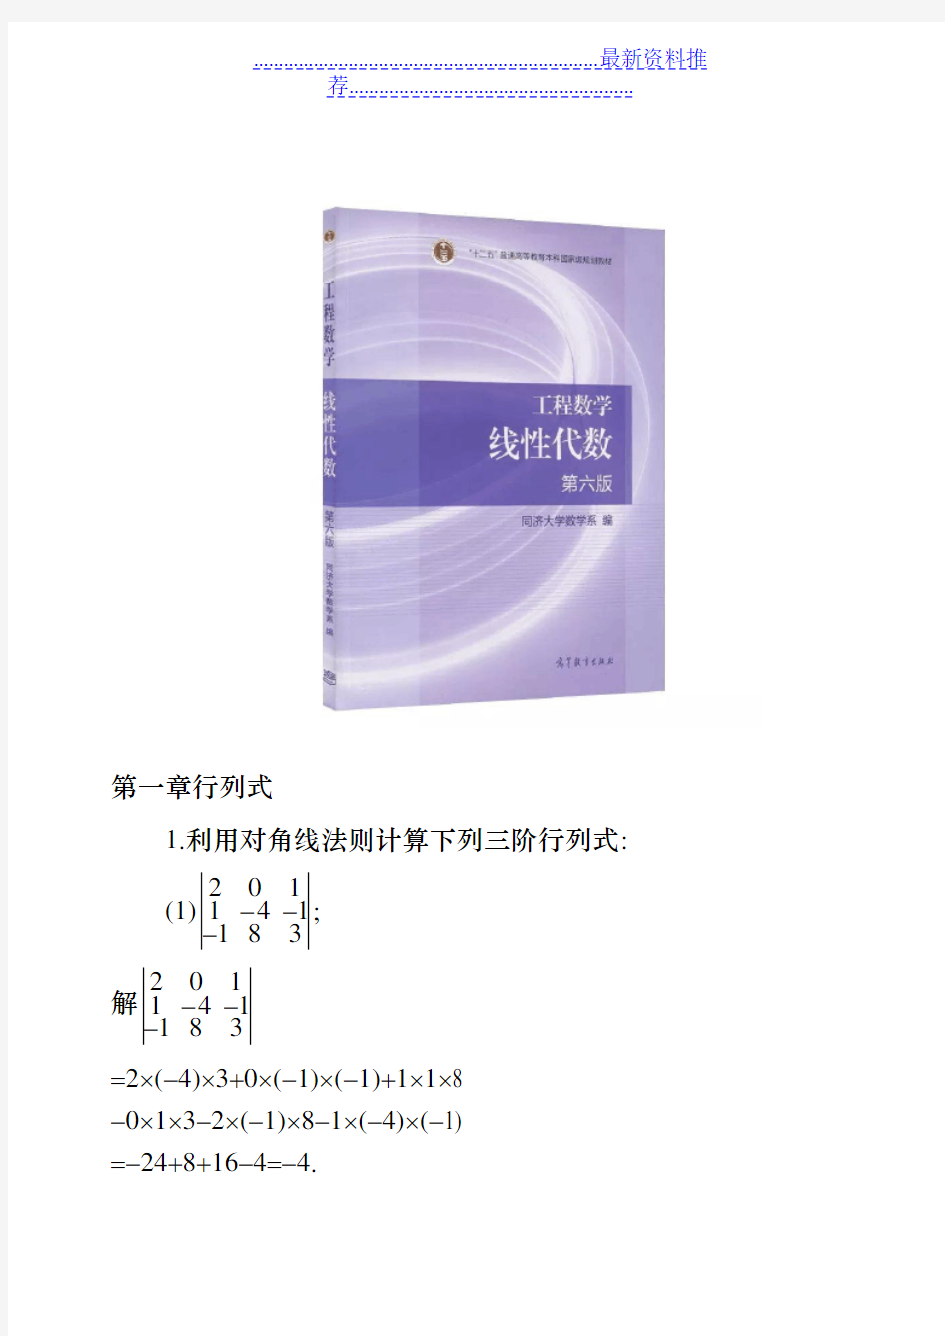 工程数学线性代数(同济大学第六版)课后习题答案(全)